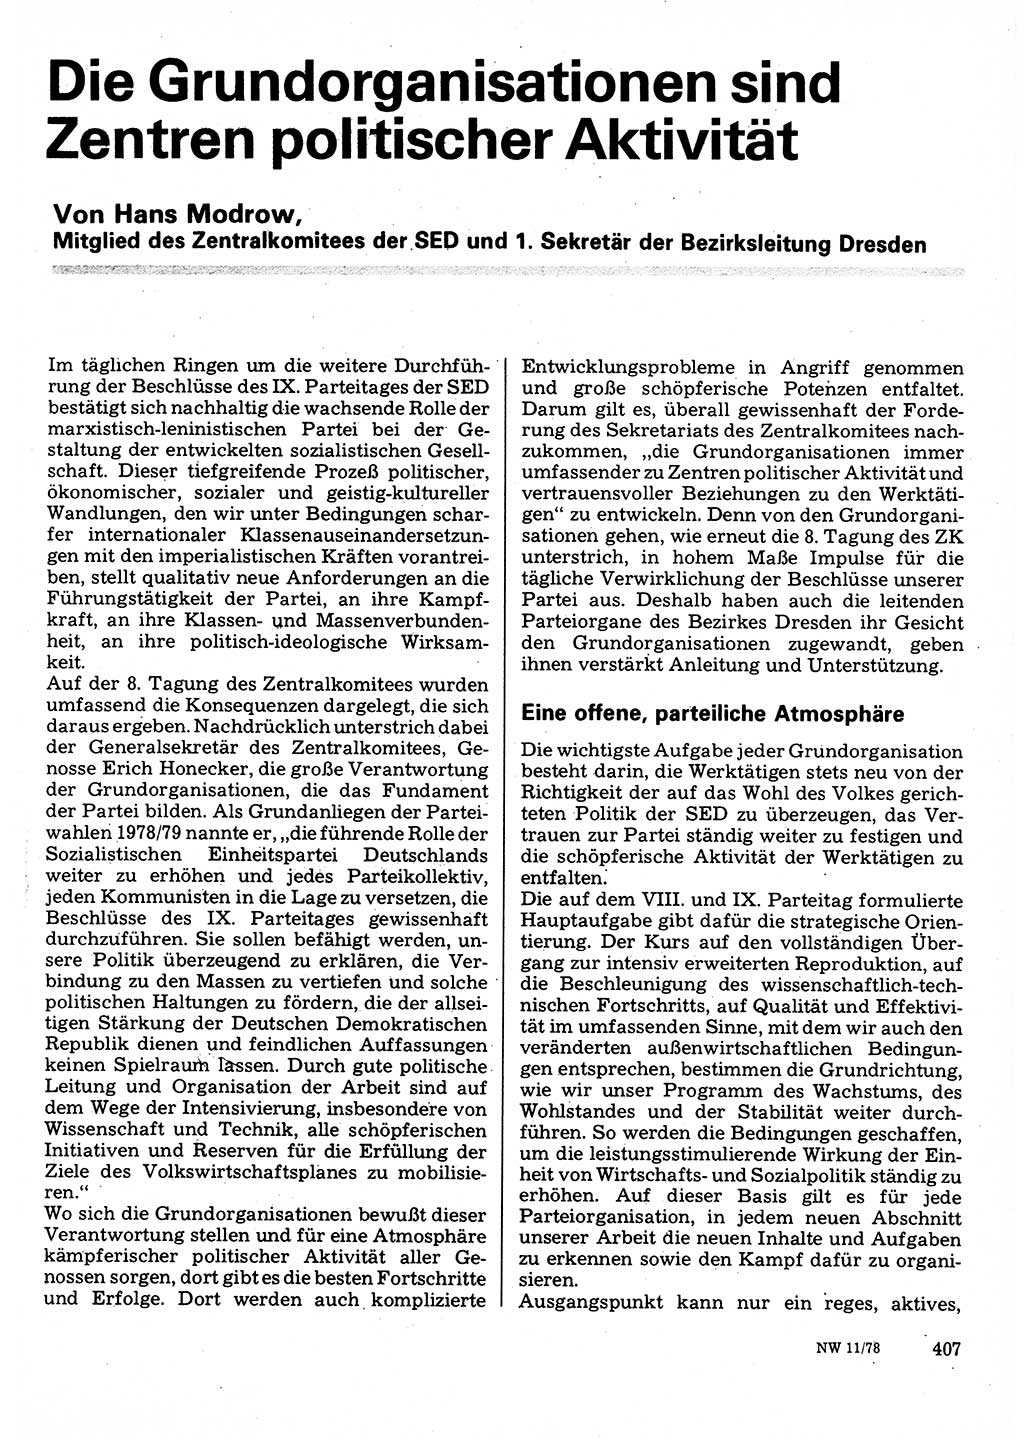 Neuer Weg (NW), Organ des Zentralkomitees (ZK) der SED (Sozialistische Einheitspartei Deutschlands) für Fragen des Parteilebens, 33. Jahrgang [Deutsche Demokratische Republik (DDR)] 1978, Seite 407 (NW ZK SED DDR 1978, S. 407)